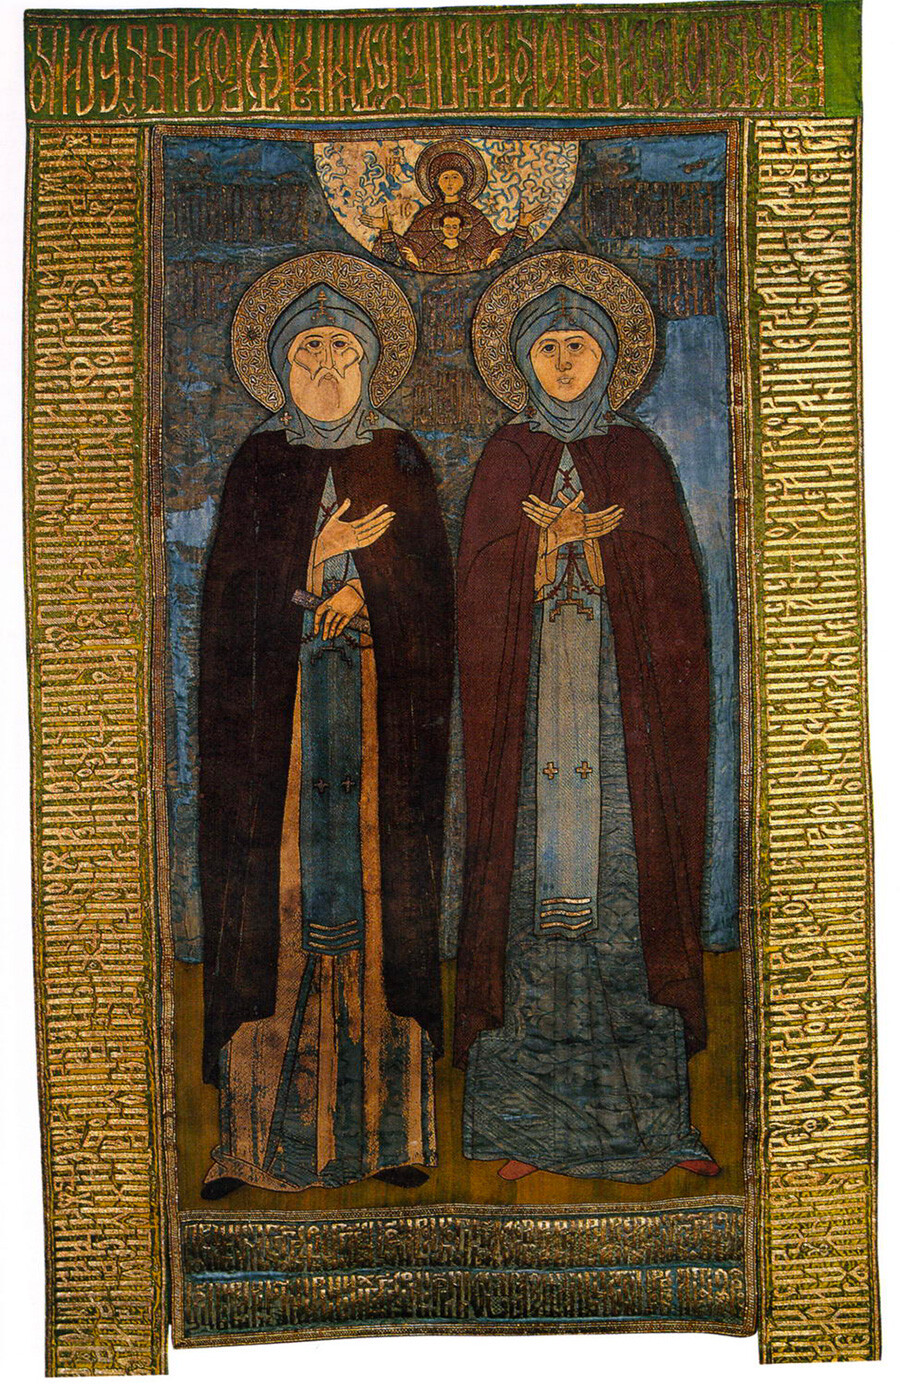 Cubierta del santuario de Pedro y Fevronia. Contribución del zar Fiodor y la zarina Irina a la catedral de la Natividad de Múrom, 1593.